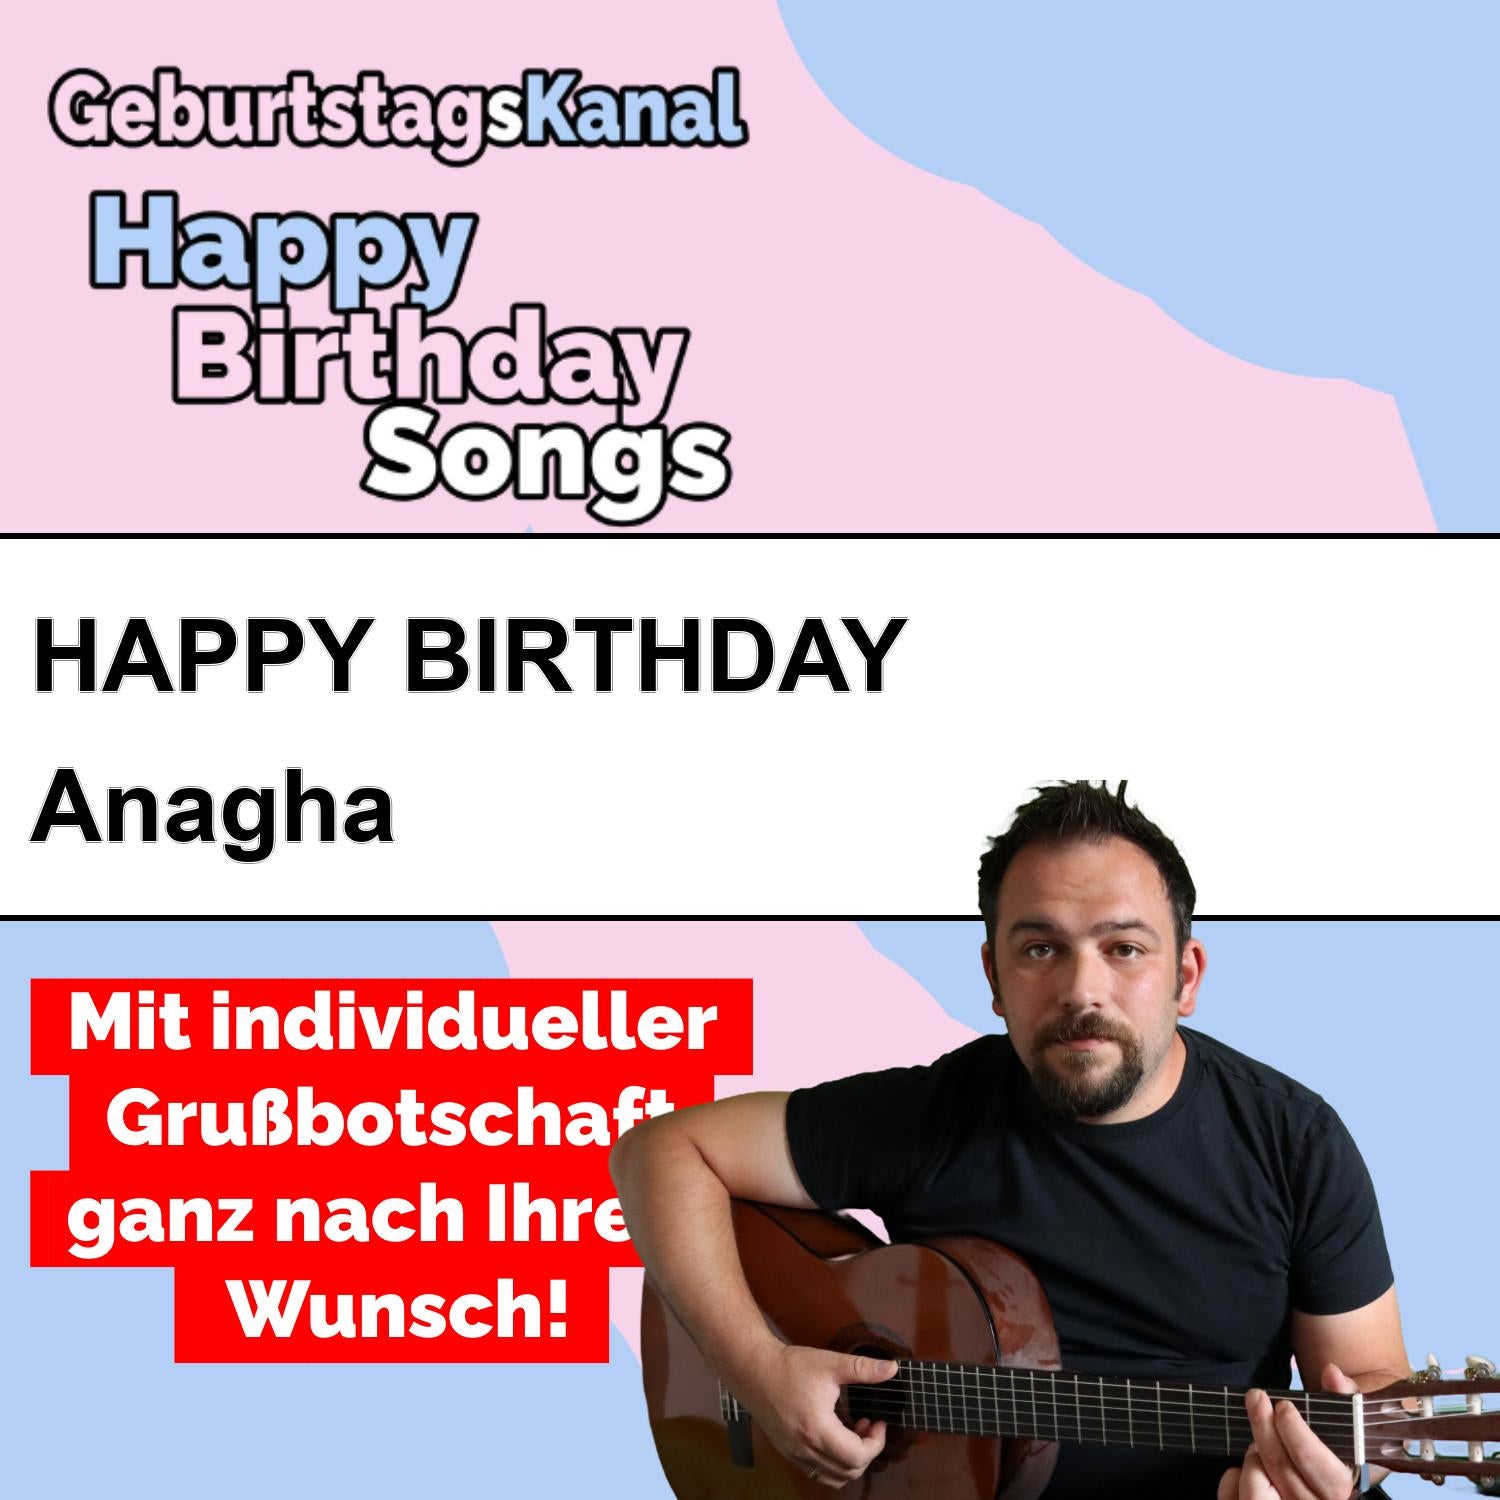 Produktbild Happy Birthday to you Anagha mit Wunschgrußbotschaft